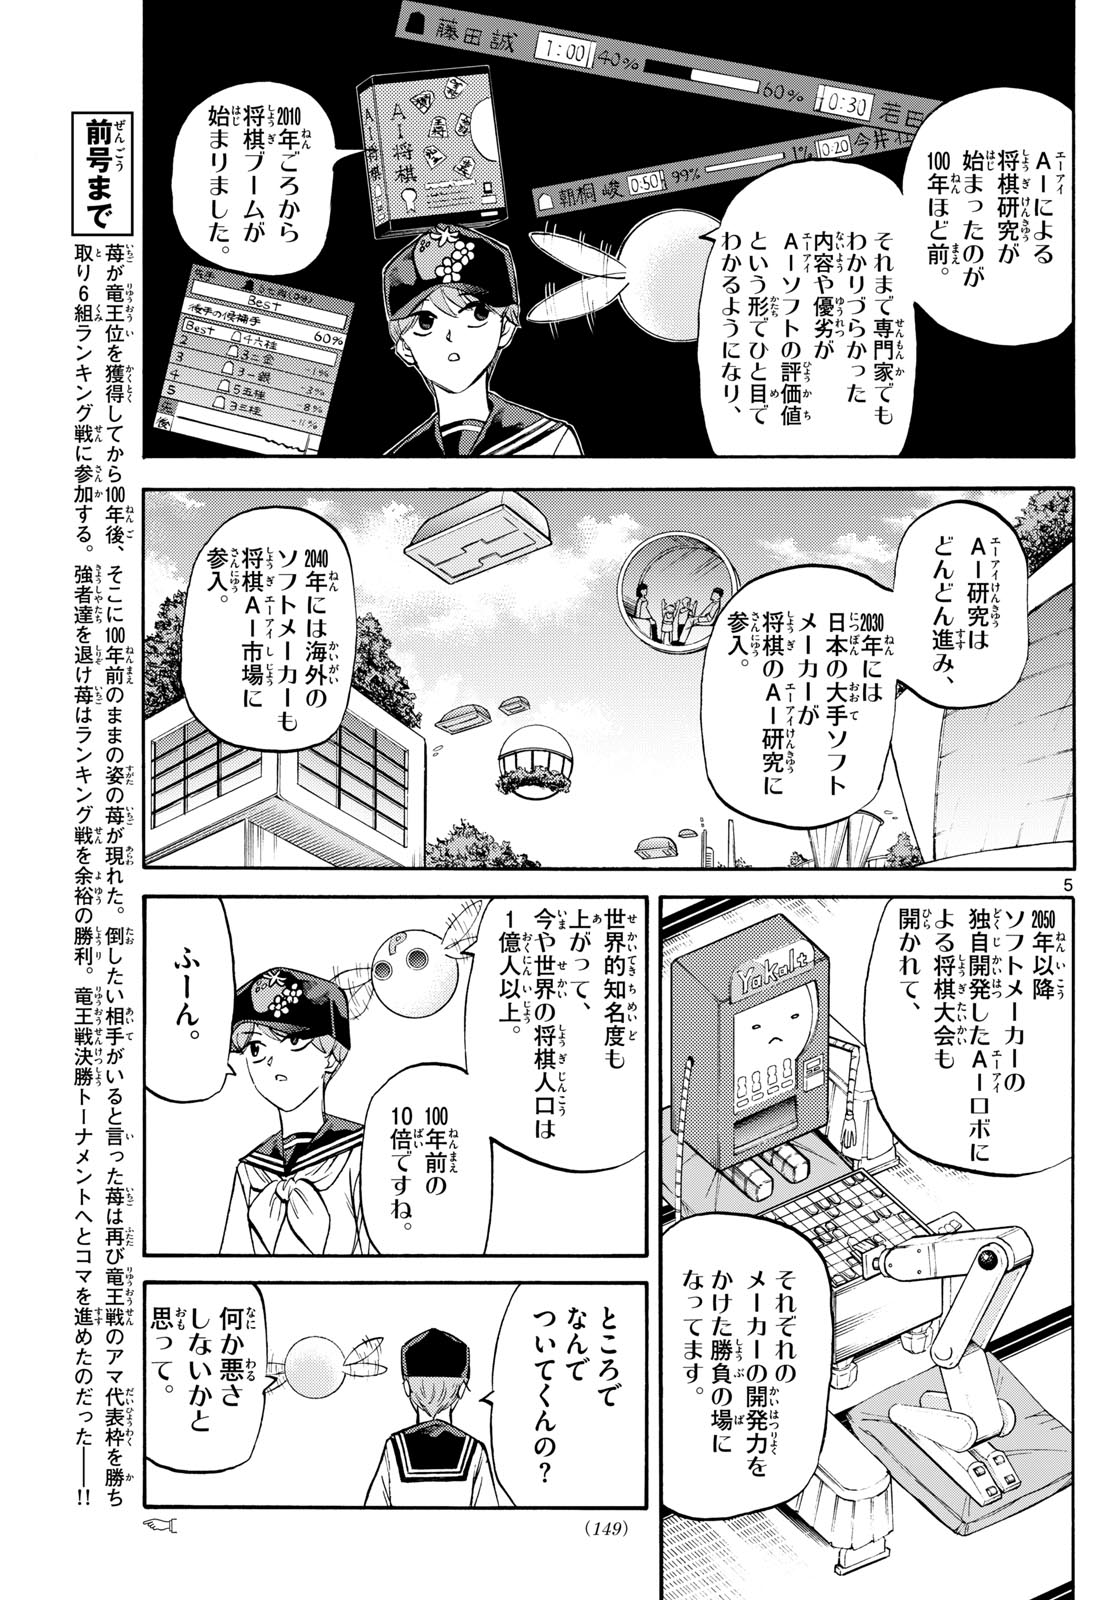 Tatsu to Ichigo - Chapter 195 - Page 5